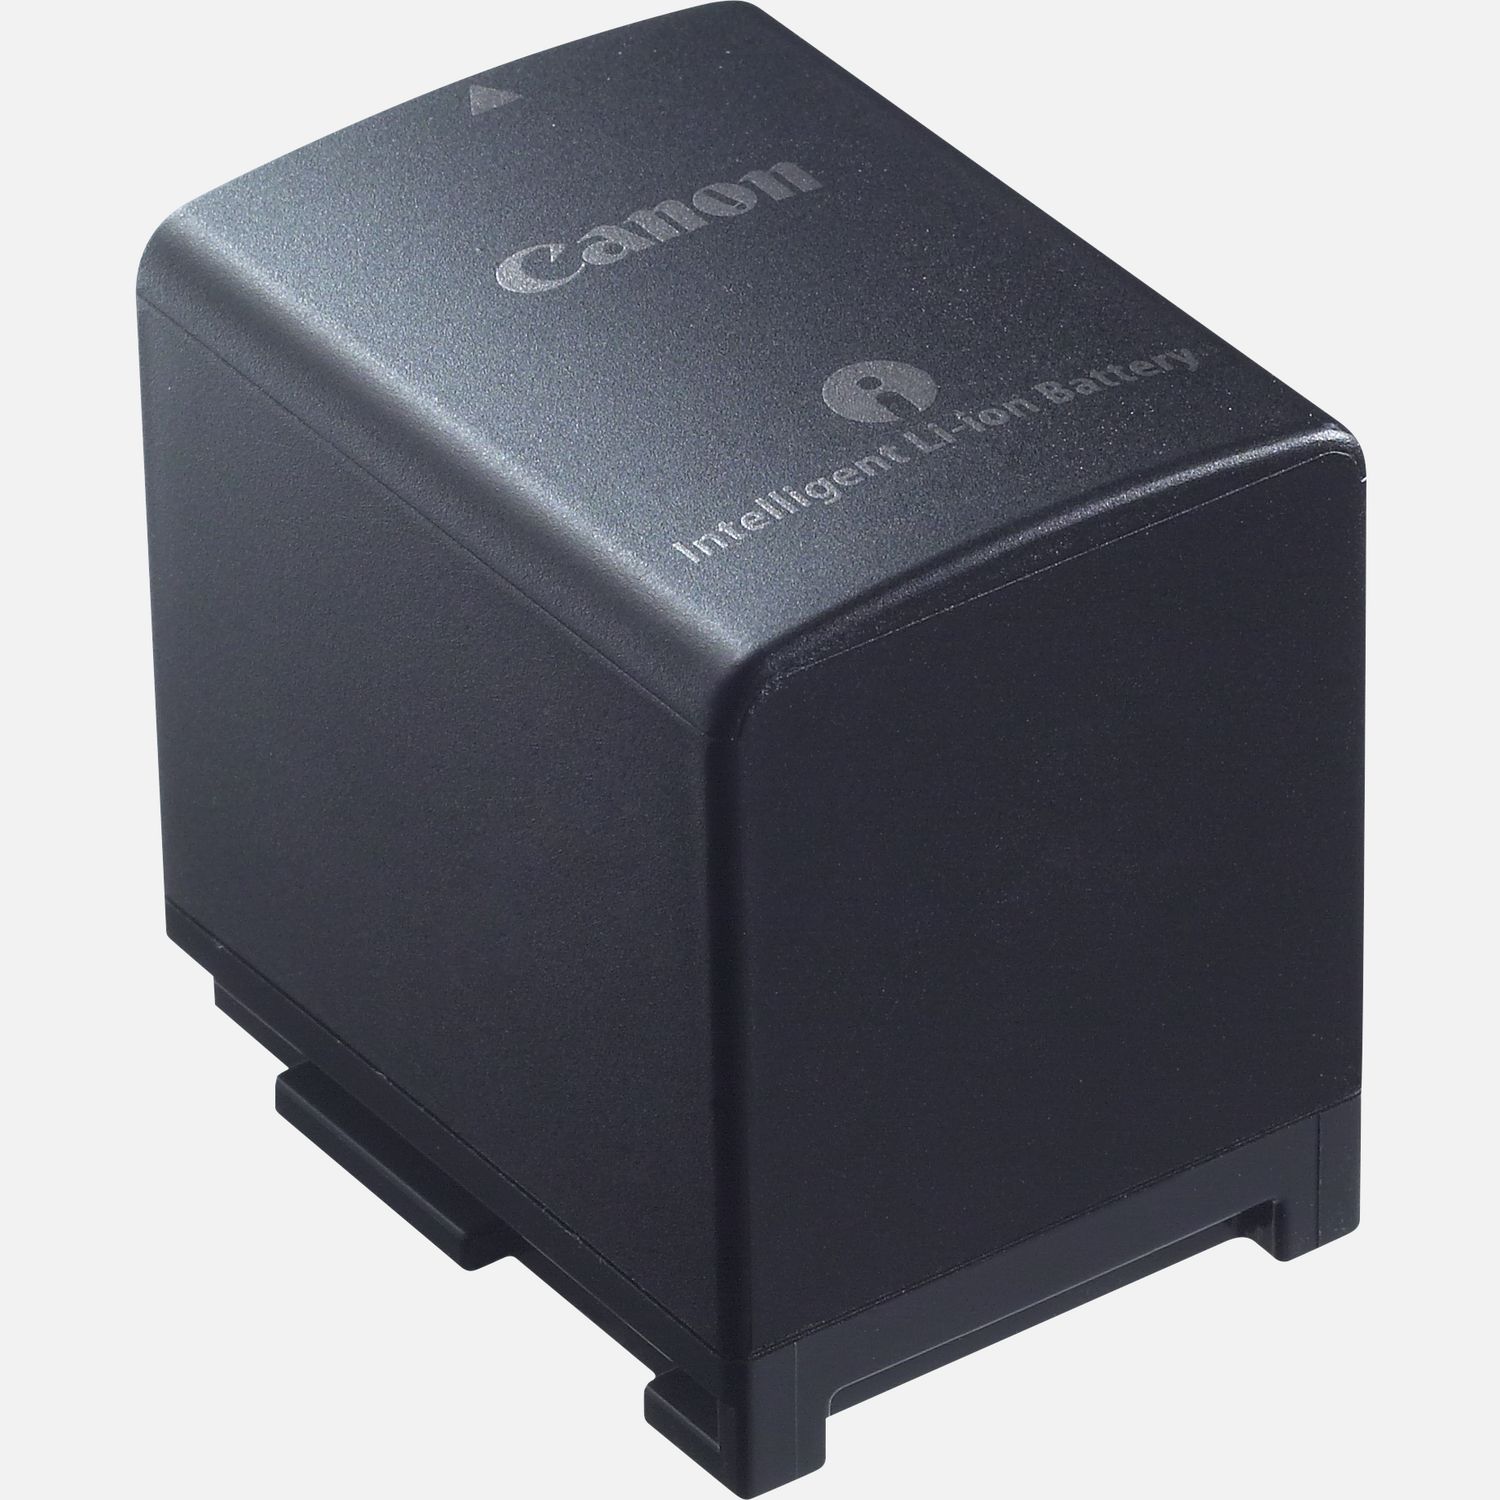 Unterwegs lnger aufnehmen mit dem Canon BP-820 Lithium-Ionen-Akku. Mit der Lithium-Ionen-Technologie sorgt dieser leistungsstarke Akku dafr, dass du mit einer einzigen Komplettladung deine Kamera optimal nutzen kannst  und das ganz ohne Memory-Effekt, wenn du den Akku immer aufldst, bevor er vollstndig entleert ist. Dieser Akku ist ideal als Zusatzakku in der Ausrstung oder als Ersatz fr den Akku des kompatiblen Camcorders.  Vorteile      Ein Ersatzakku fr deinen kompatiblen Camcorder          Lithium-Ionen-Technologie fr lange anhaltende Akkuladungen          Akkus ohne Memory-Effekt          Bei kompakten Maen und einem geringen Gewicht sind Lithium-Ionen-Akkus besonders leistungsstark          Lieferumfang       Akku BP-820